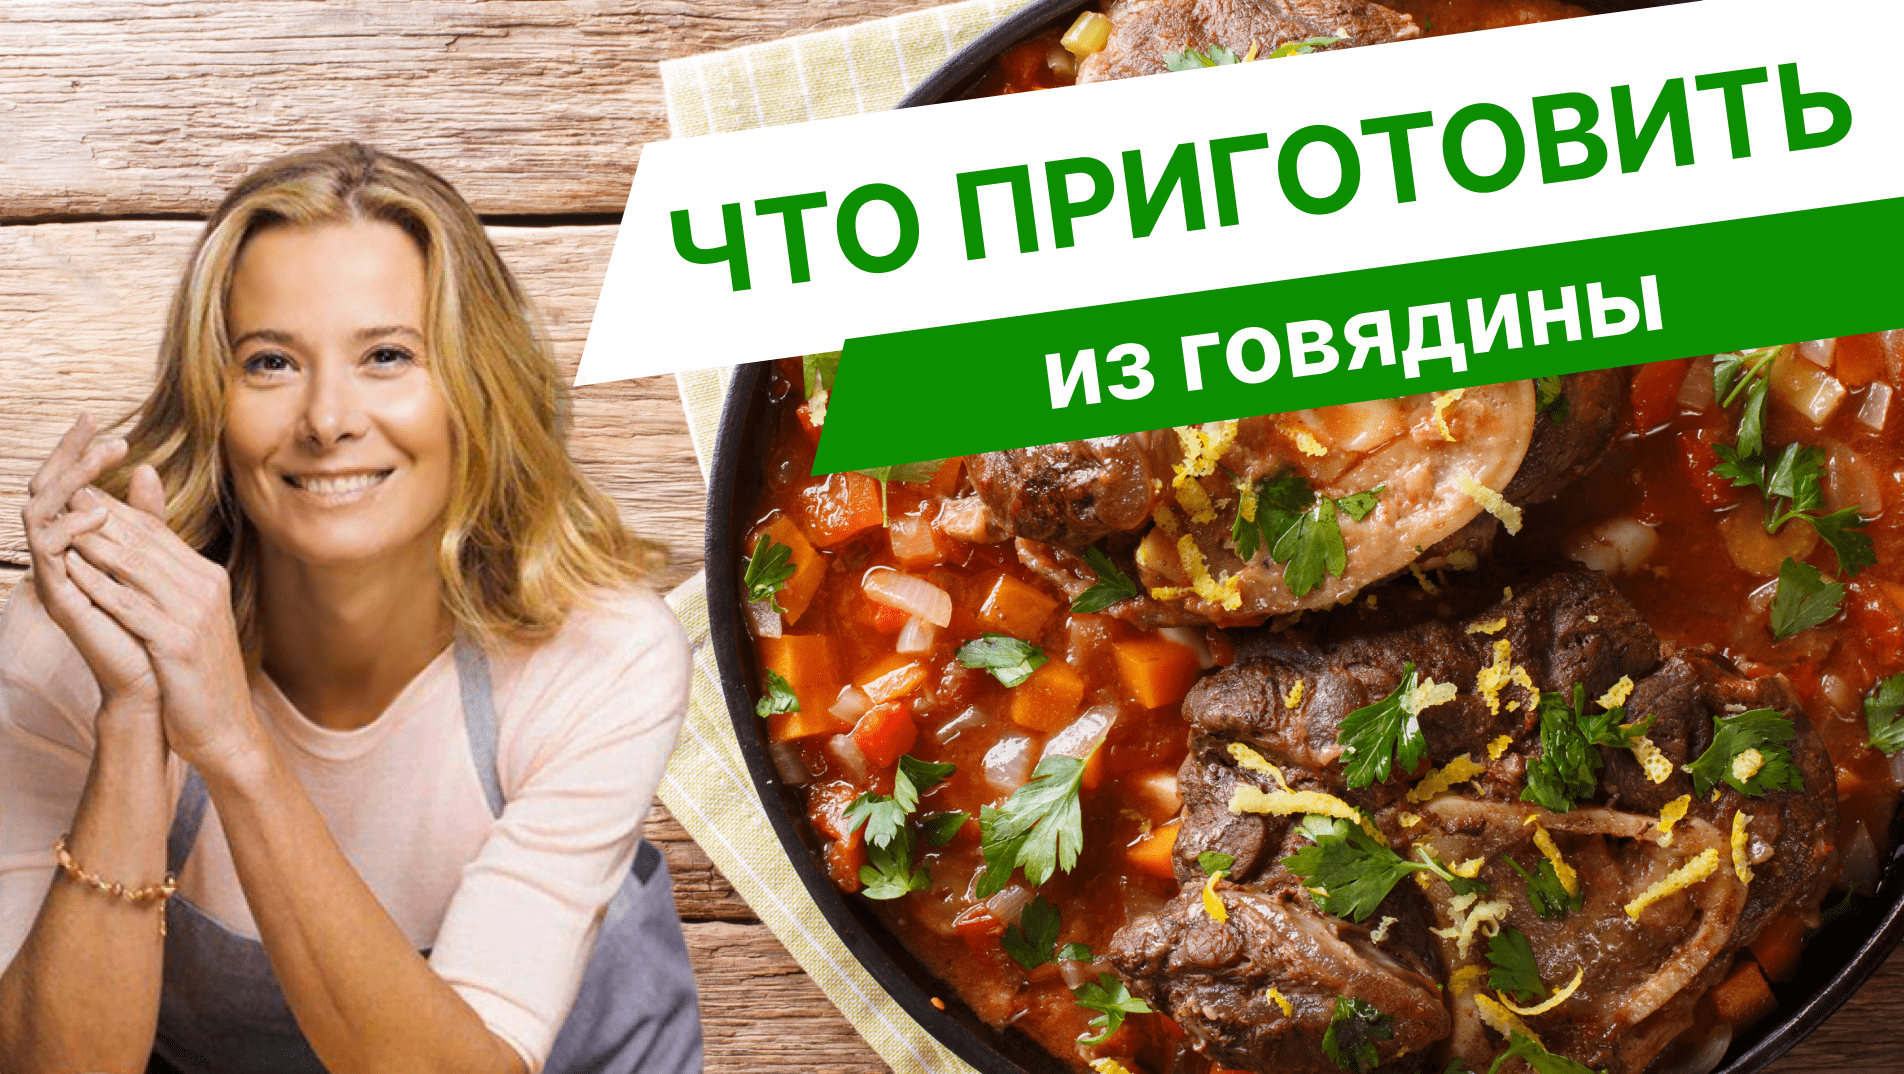 Популярные блюда из говядины — рецепты от Юлии Высоцкой